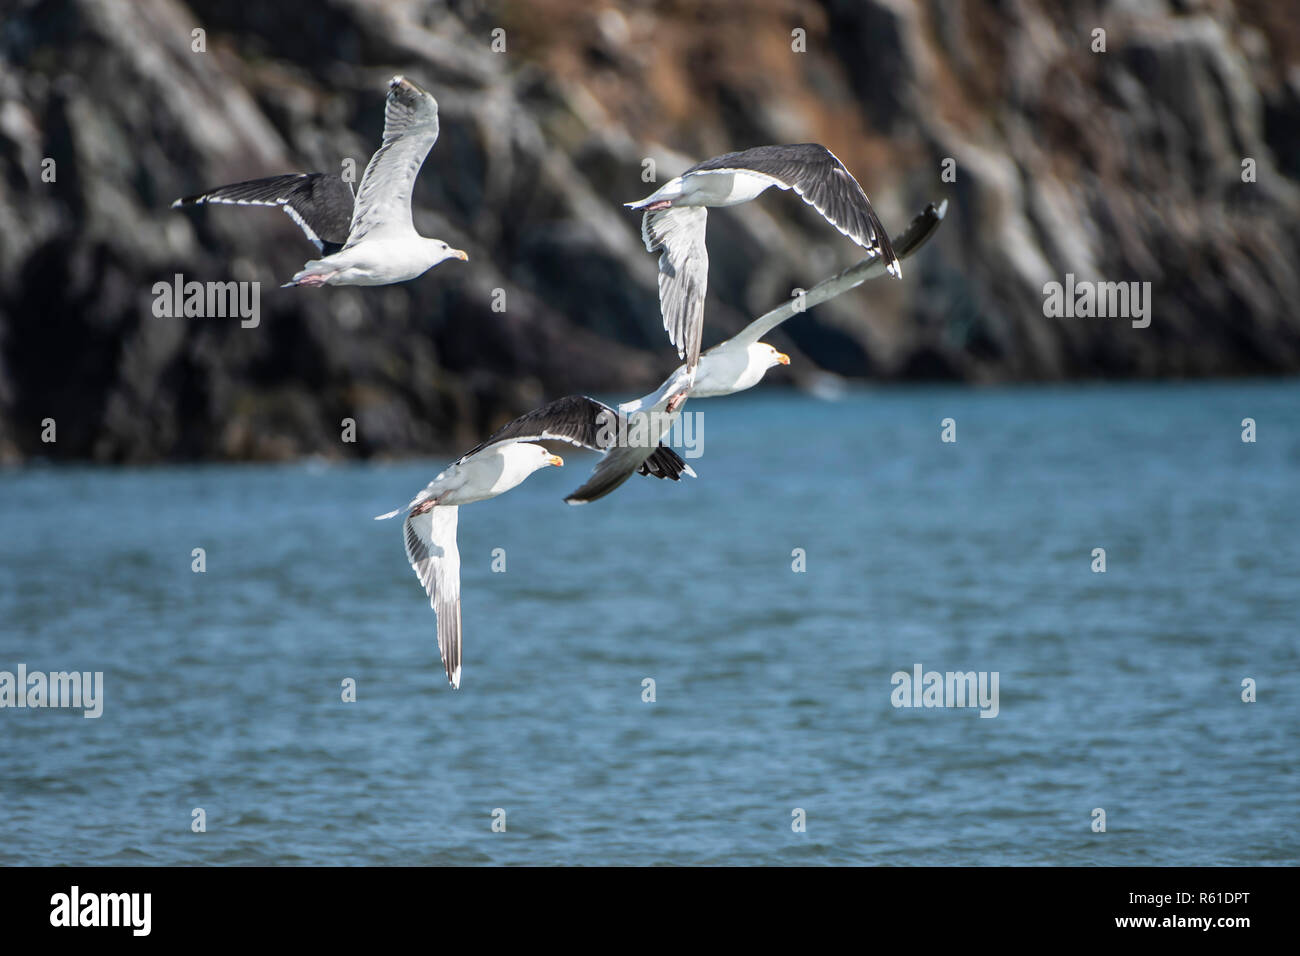 Black-backed gulls in flight in little rocky bay Stock Photo